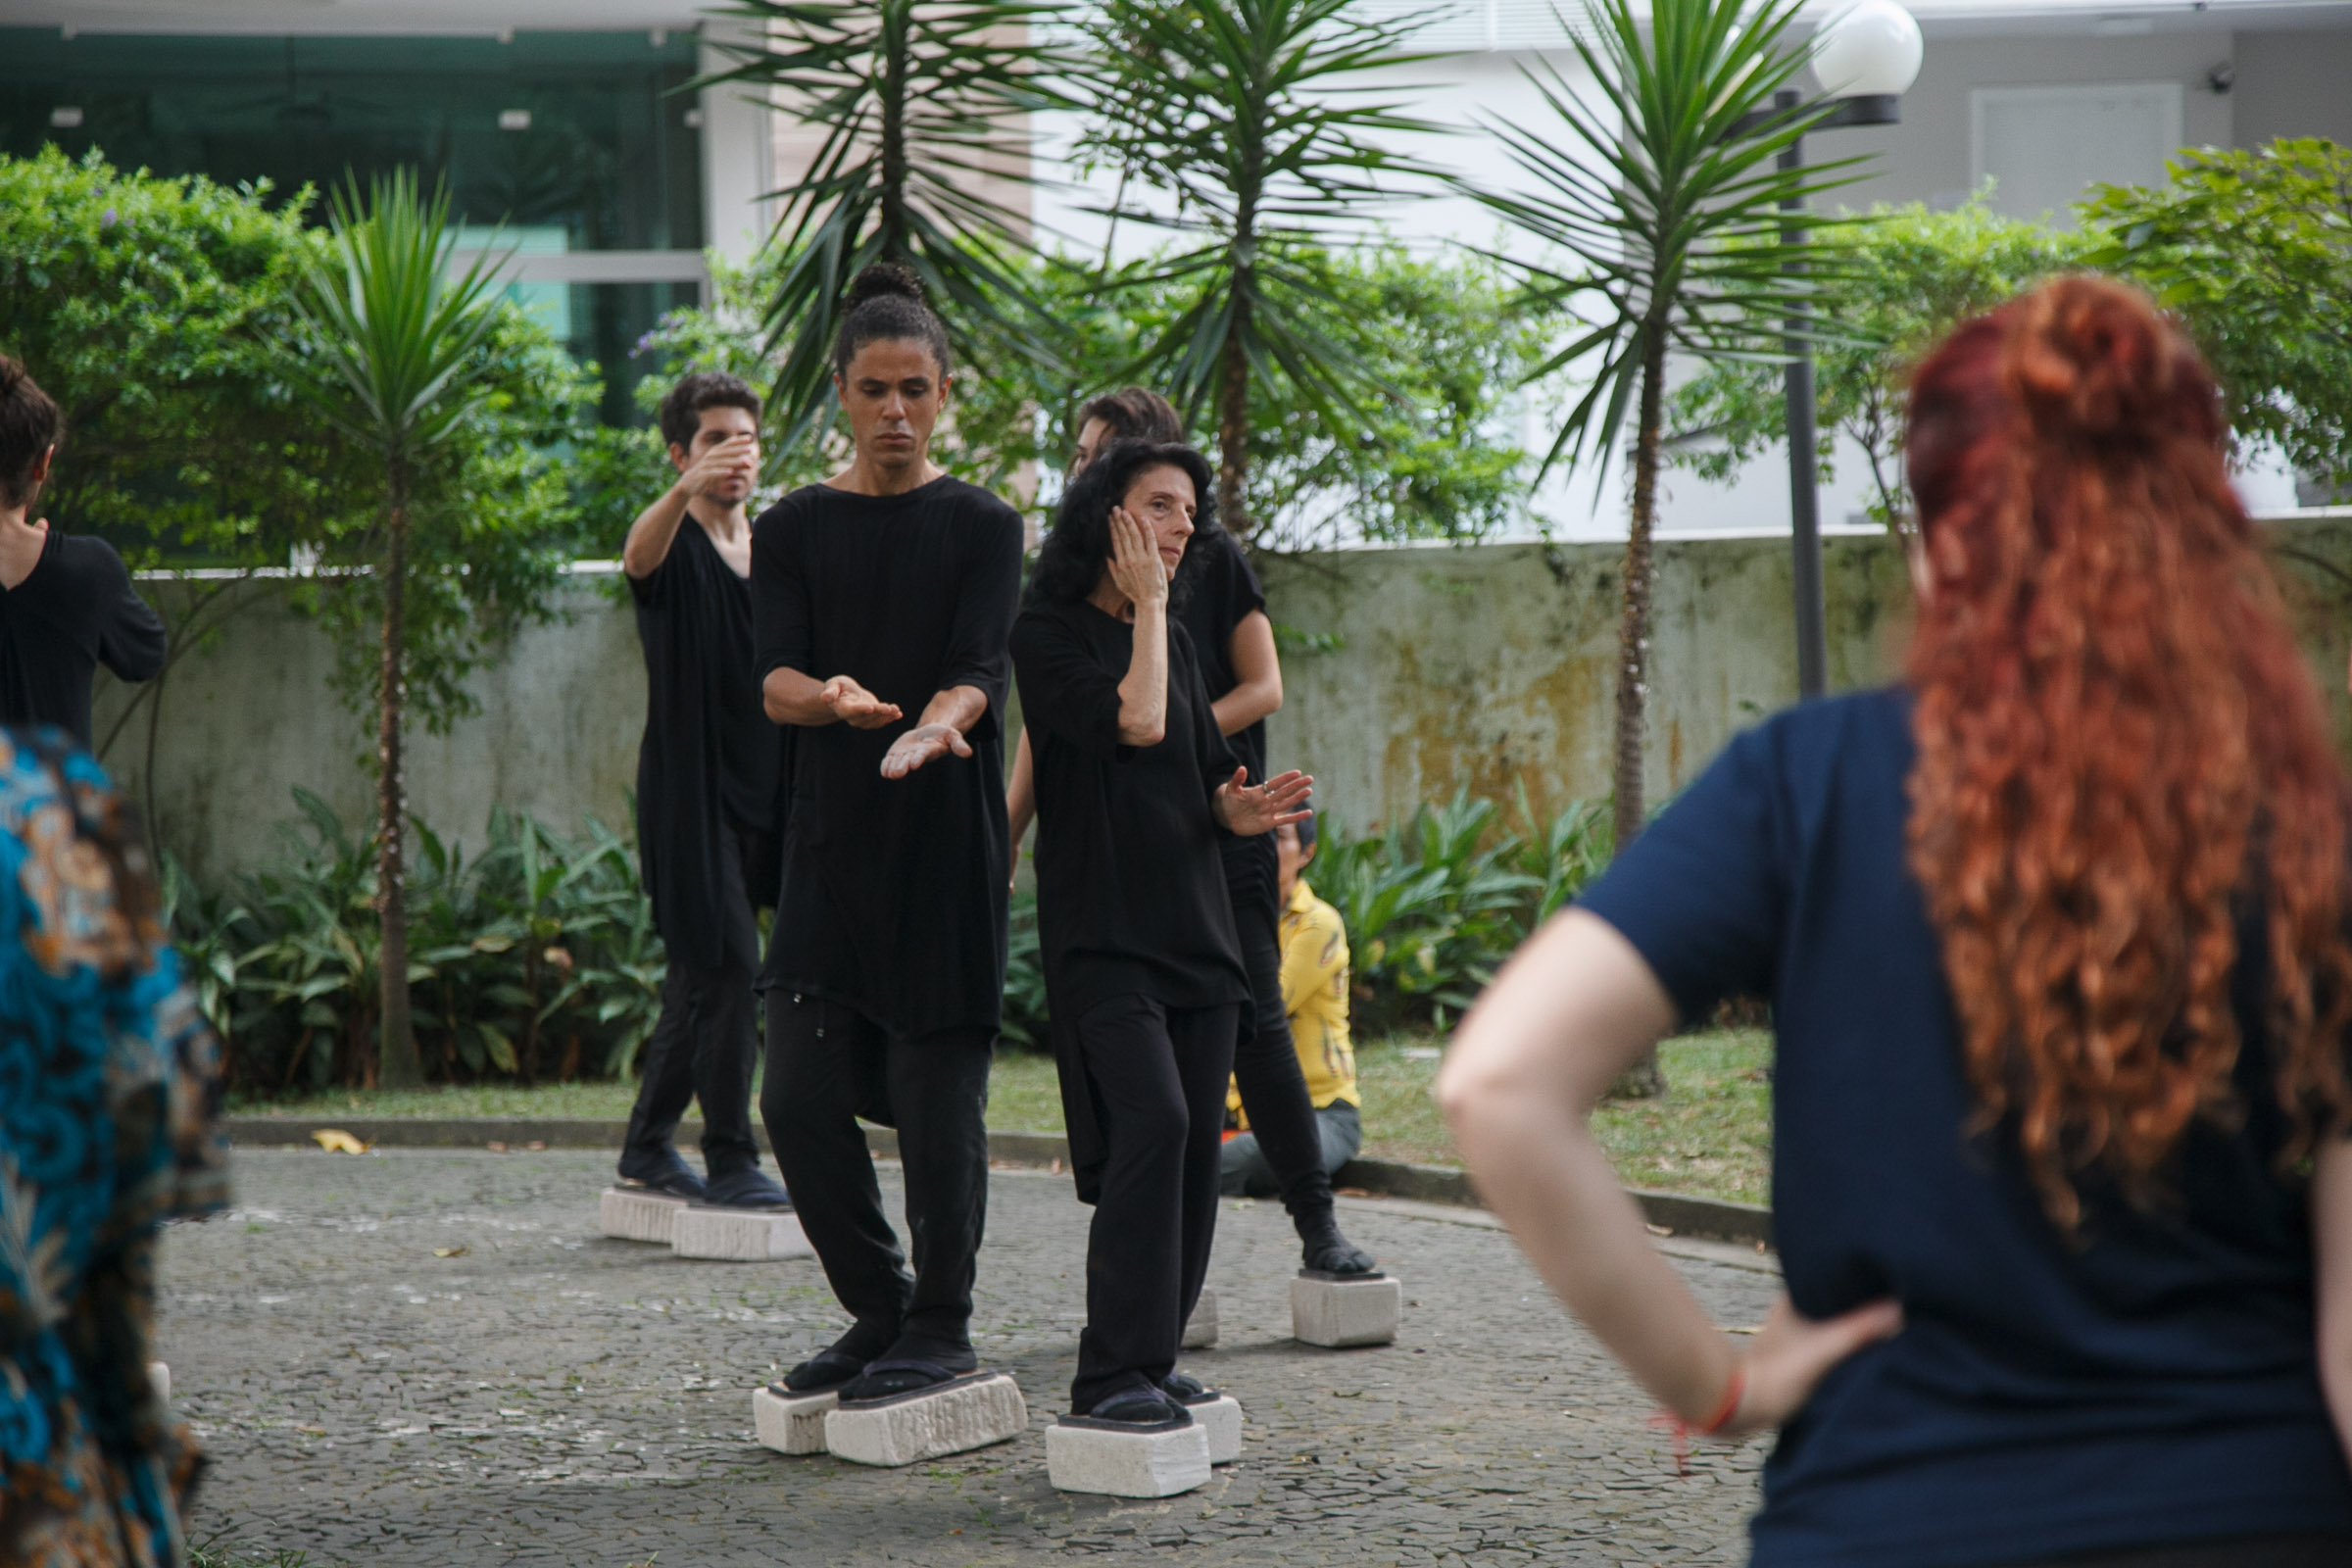 11º Visões Urbanas - Festival Internacional de Dança em Paisagens Urbanas, realizado pela Cia Artesãos do Corpo em São Paulo.  (Foto: Fábio Pazzini)